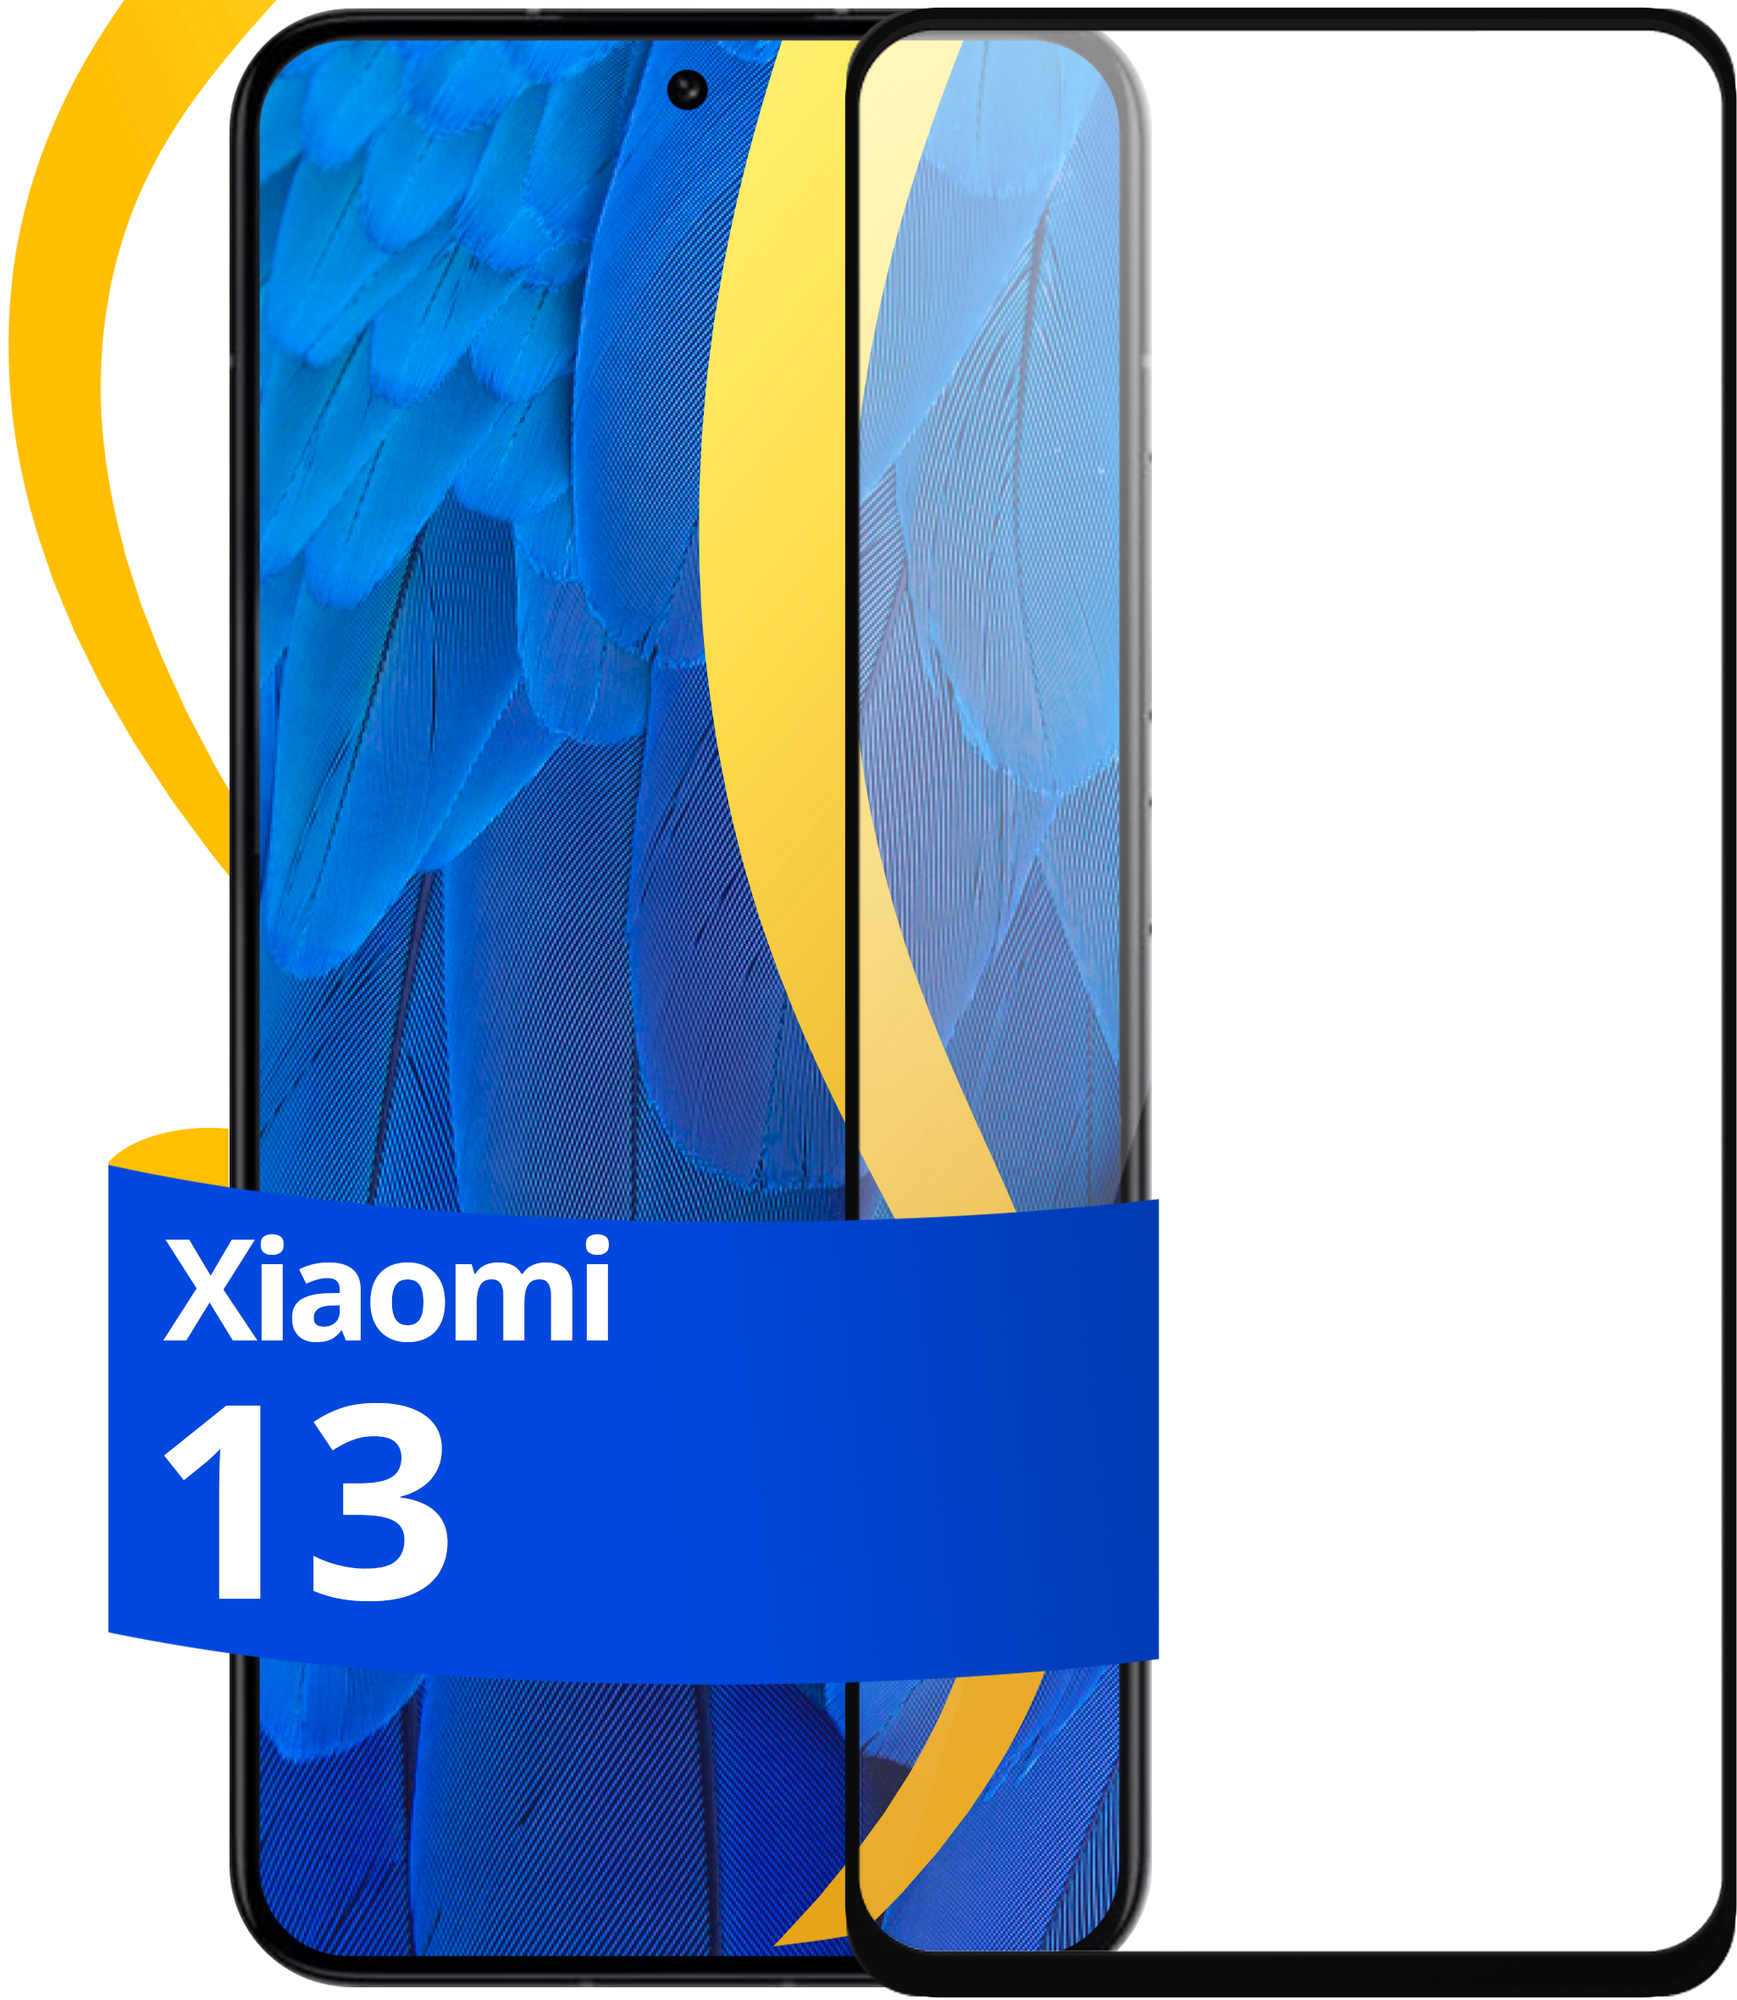 Глянцевое защитное стекло для телефона Xiaomi 13 / Противоударное стекло с олеофобным покрытием на смартфон Сяоми 13